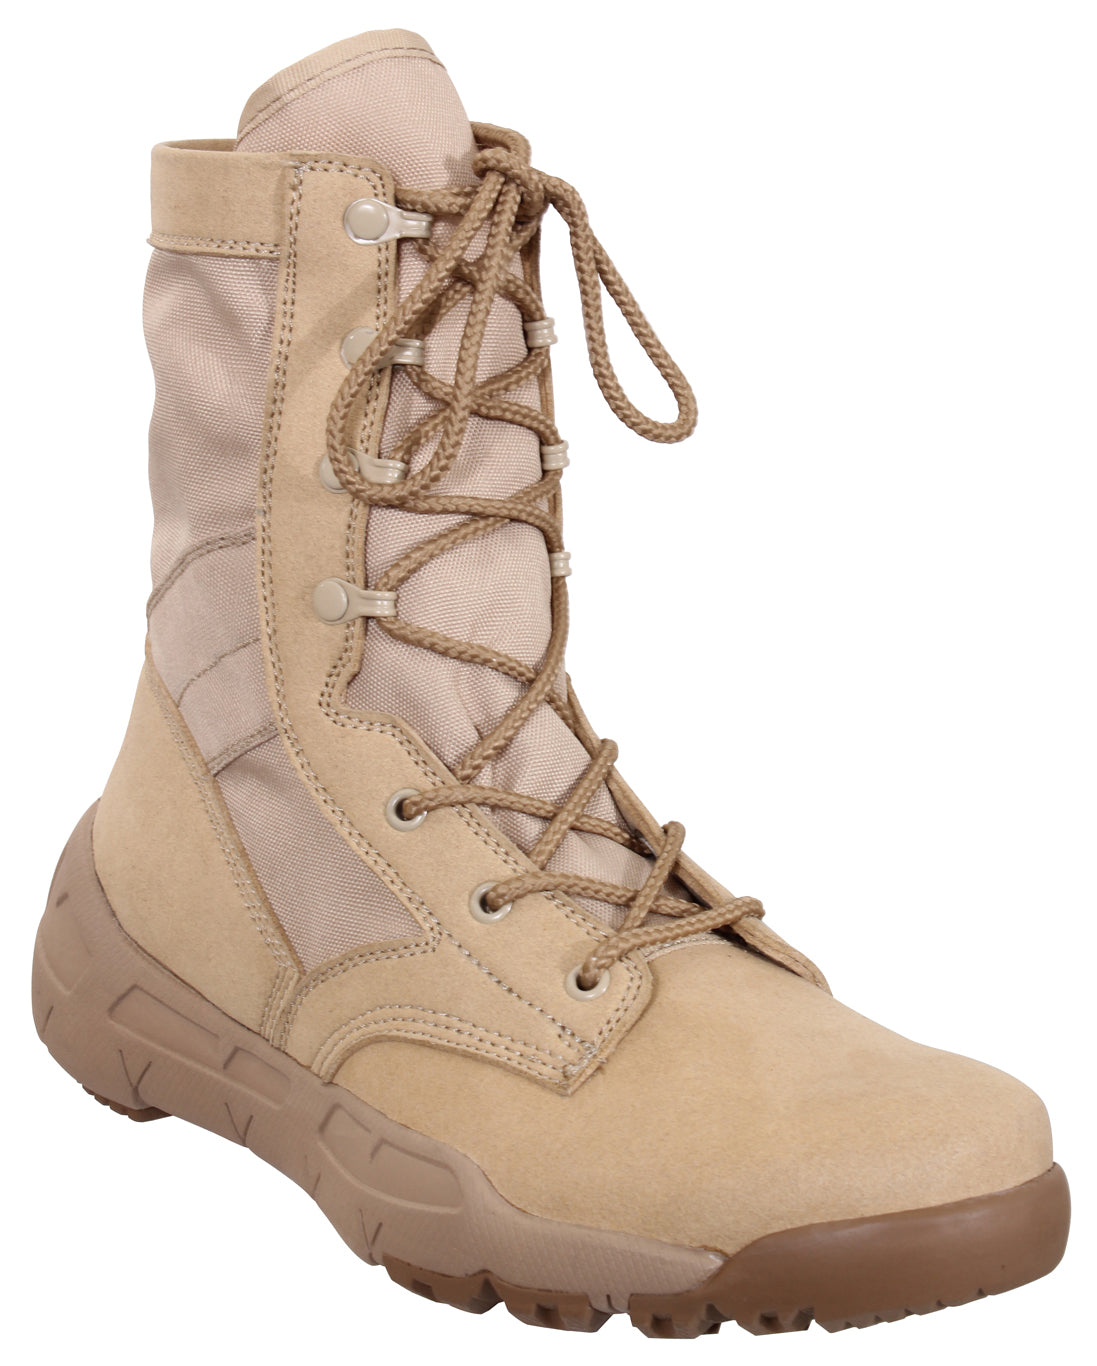 [AR 670-1] V-Max Lightweight Tactical Boots Desert Sand